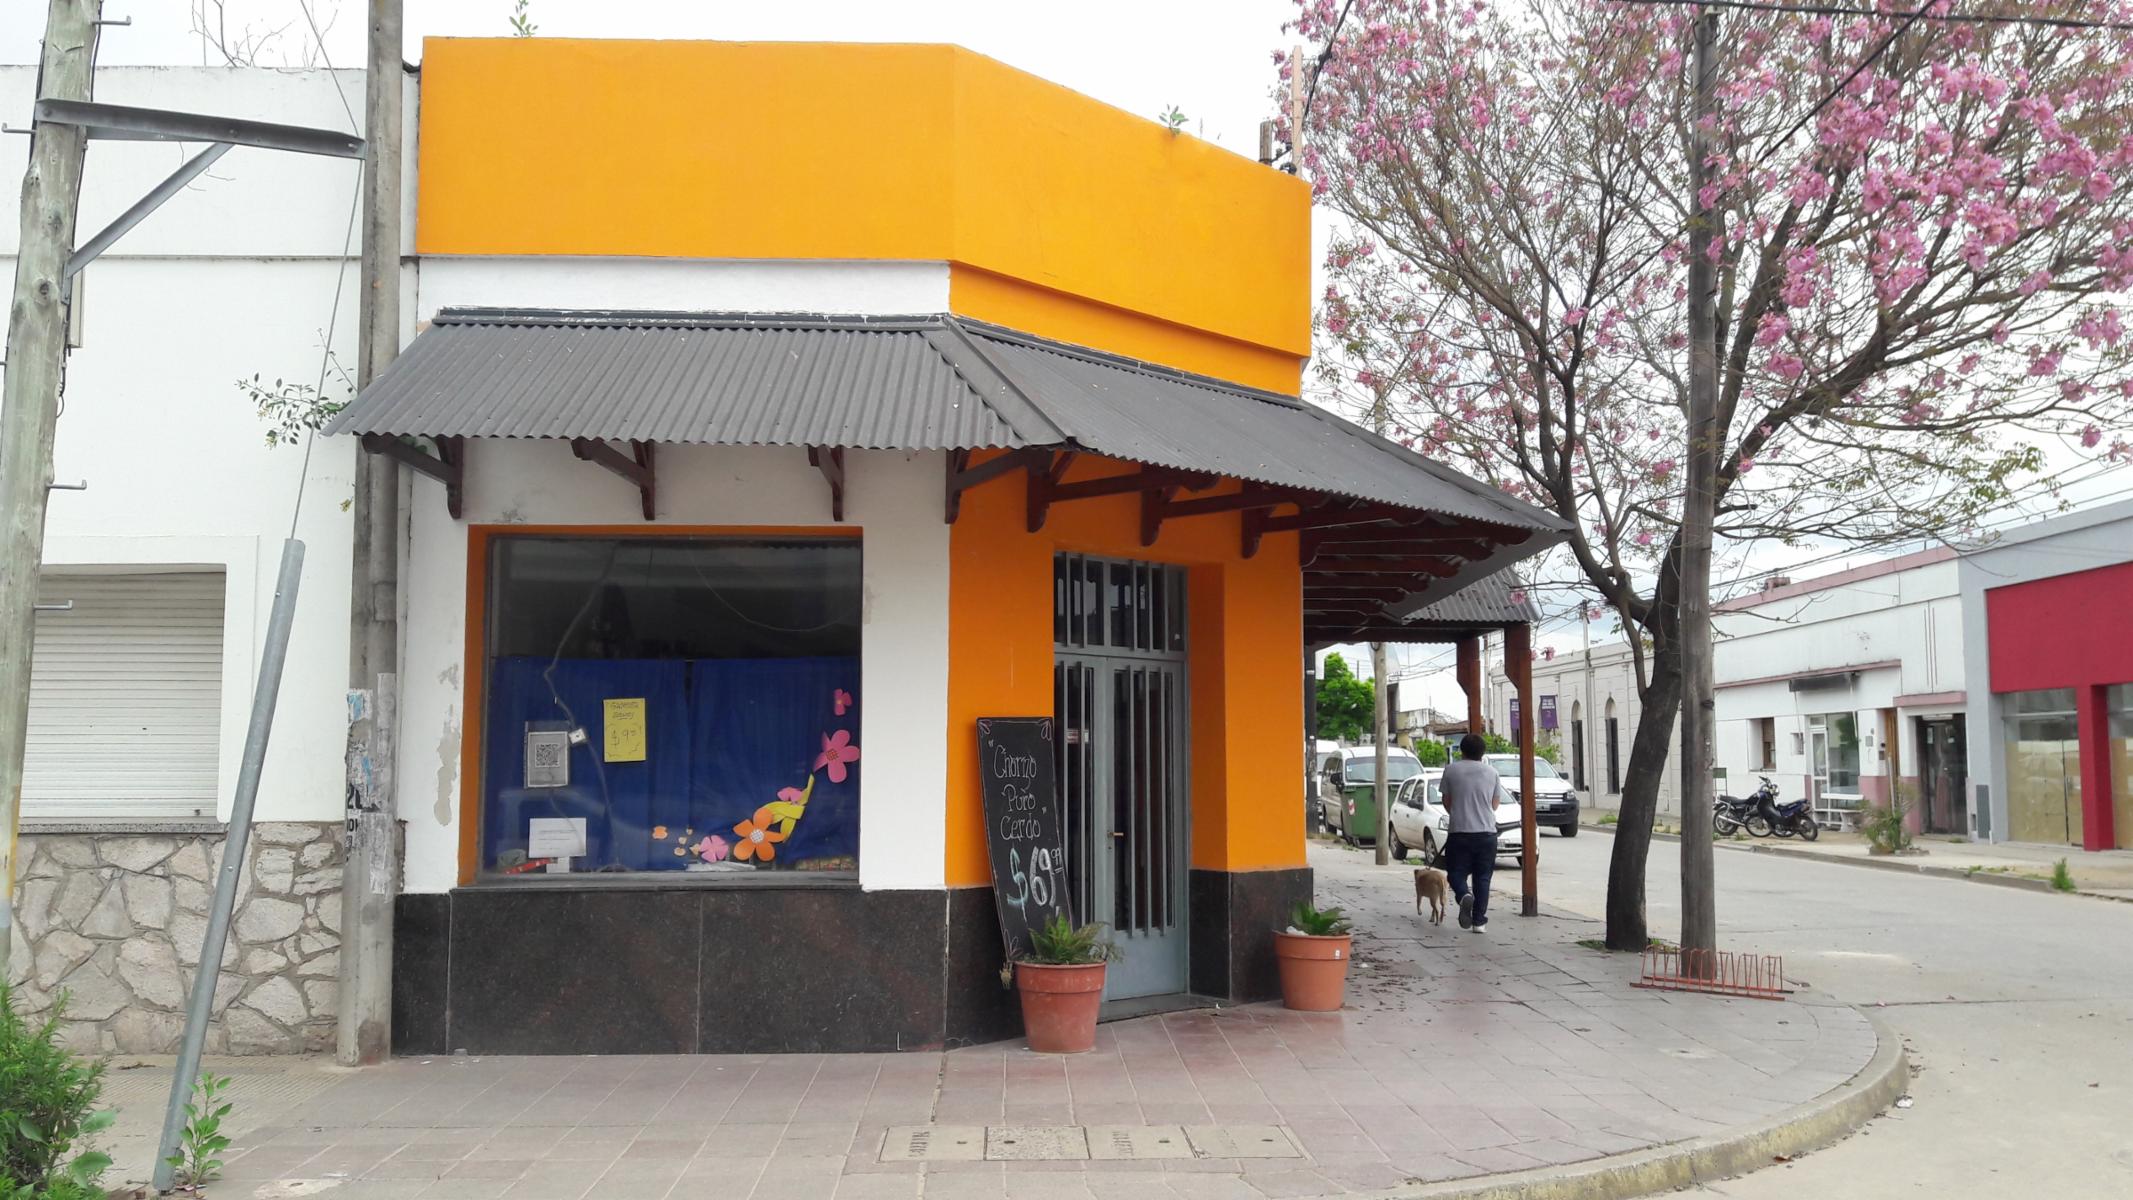 Excelente Local Céntrico EN VENTA - San Martín y Gazcon - Baradero - Bs As